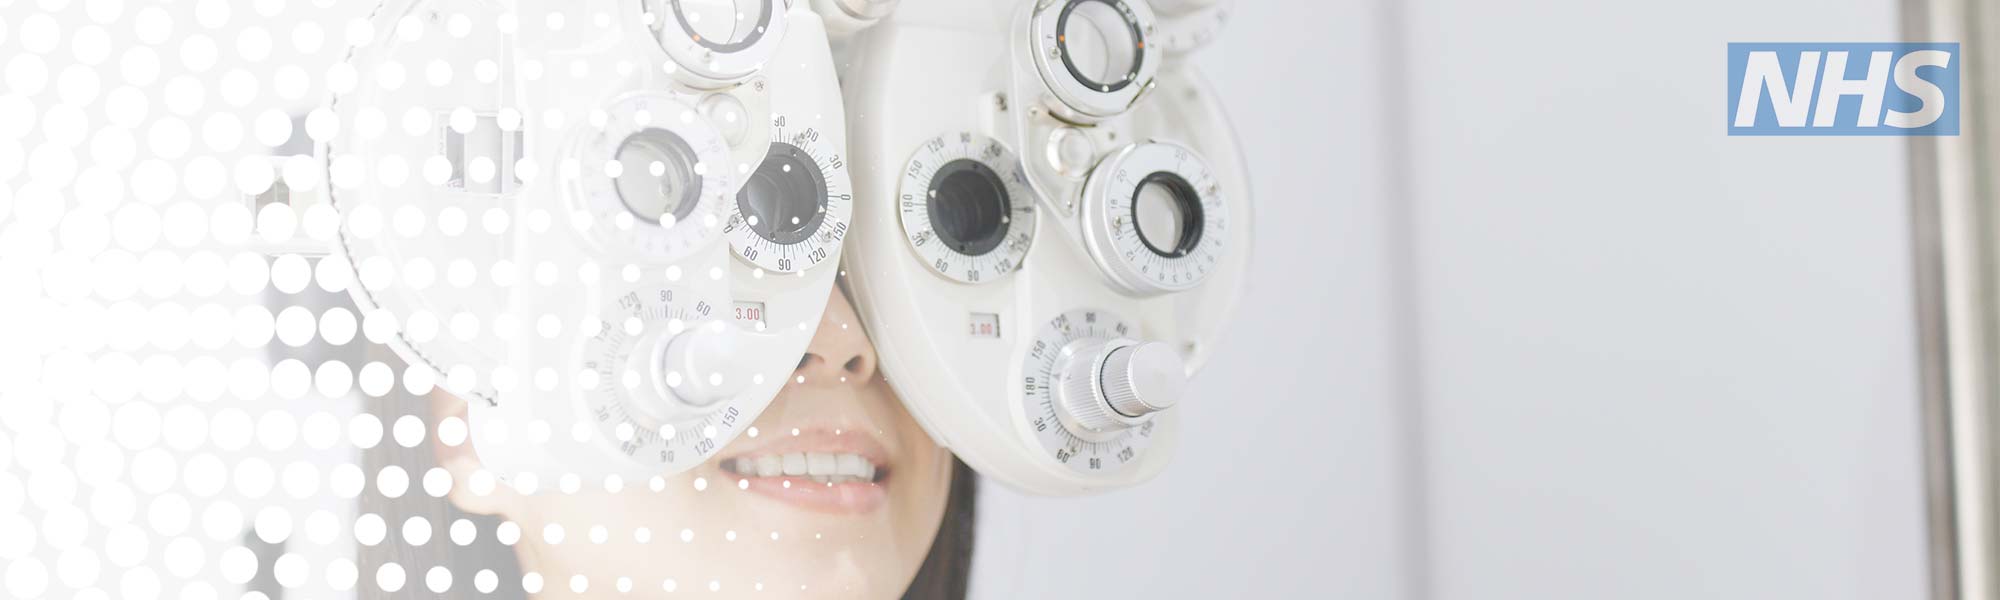 NHS Eye Tests